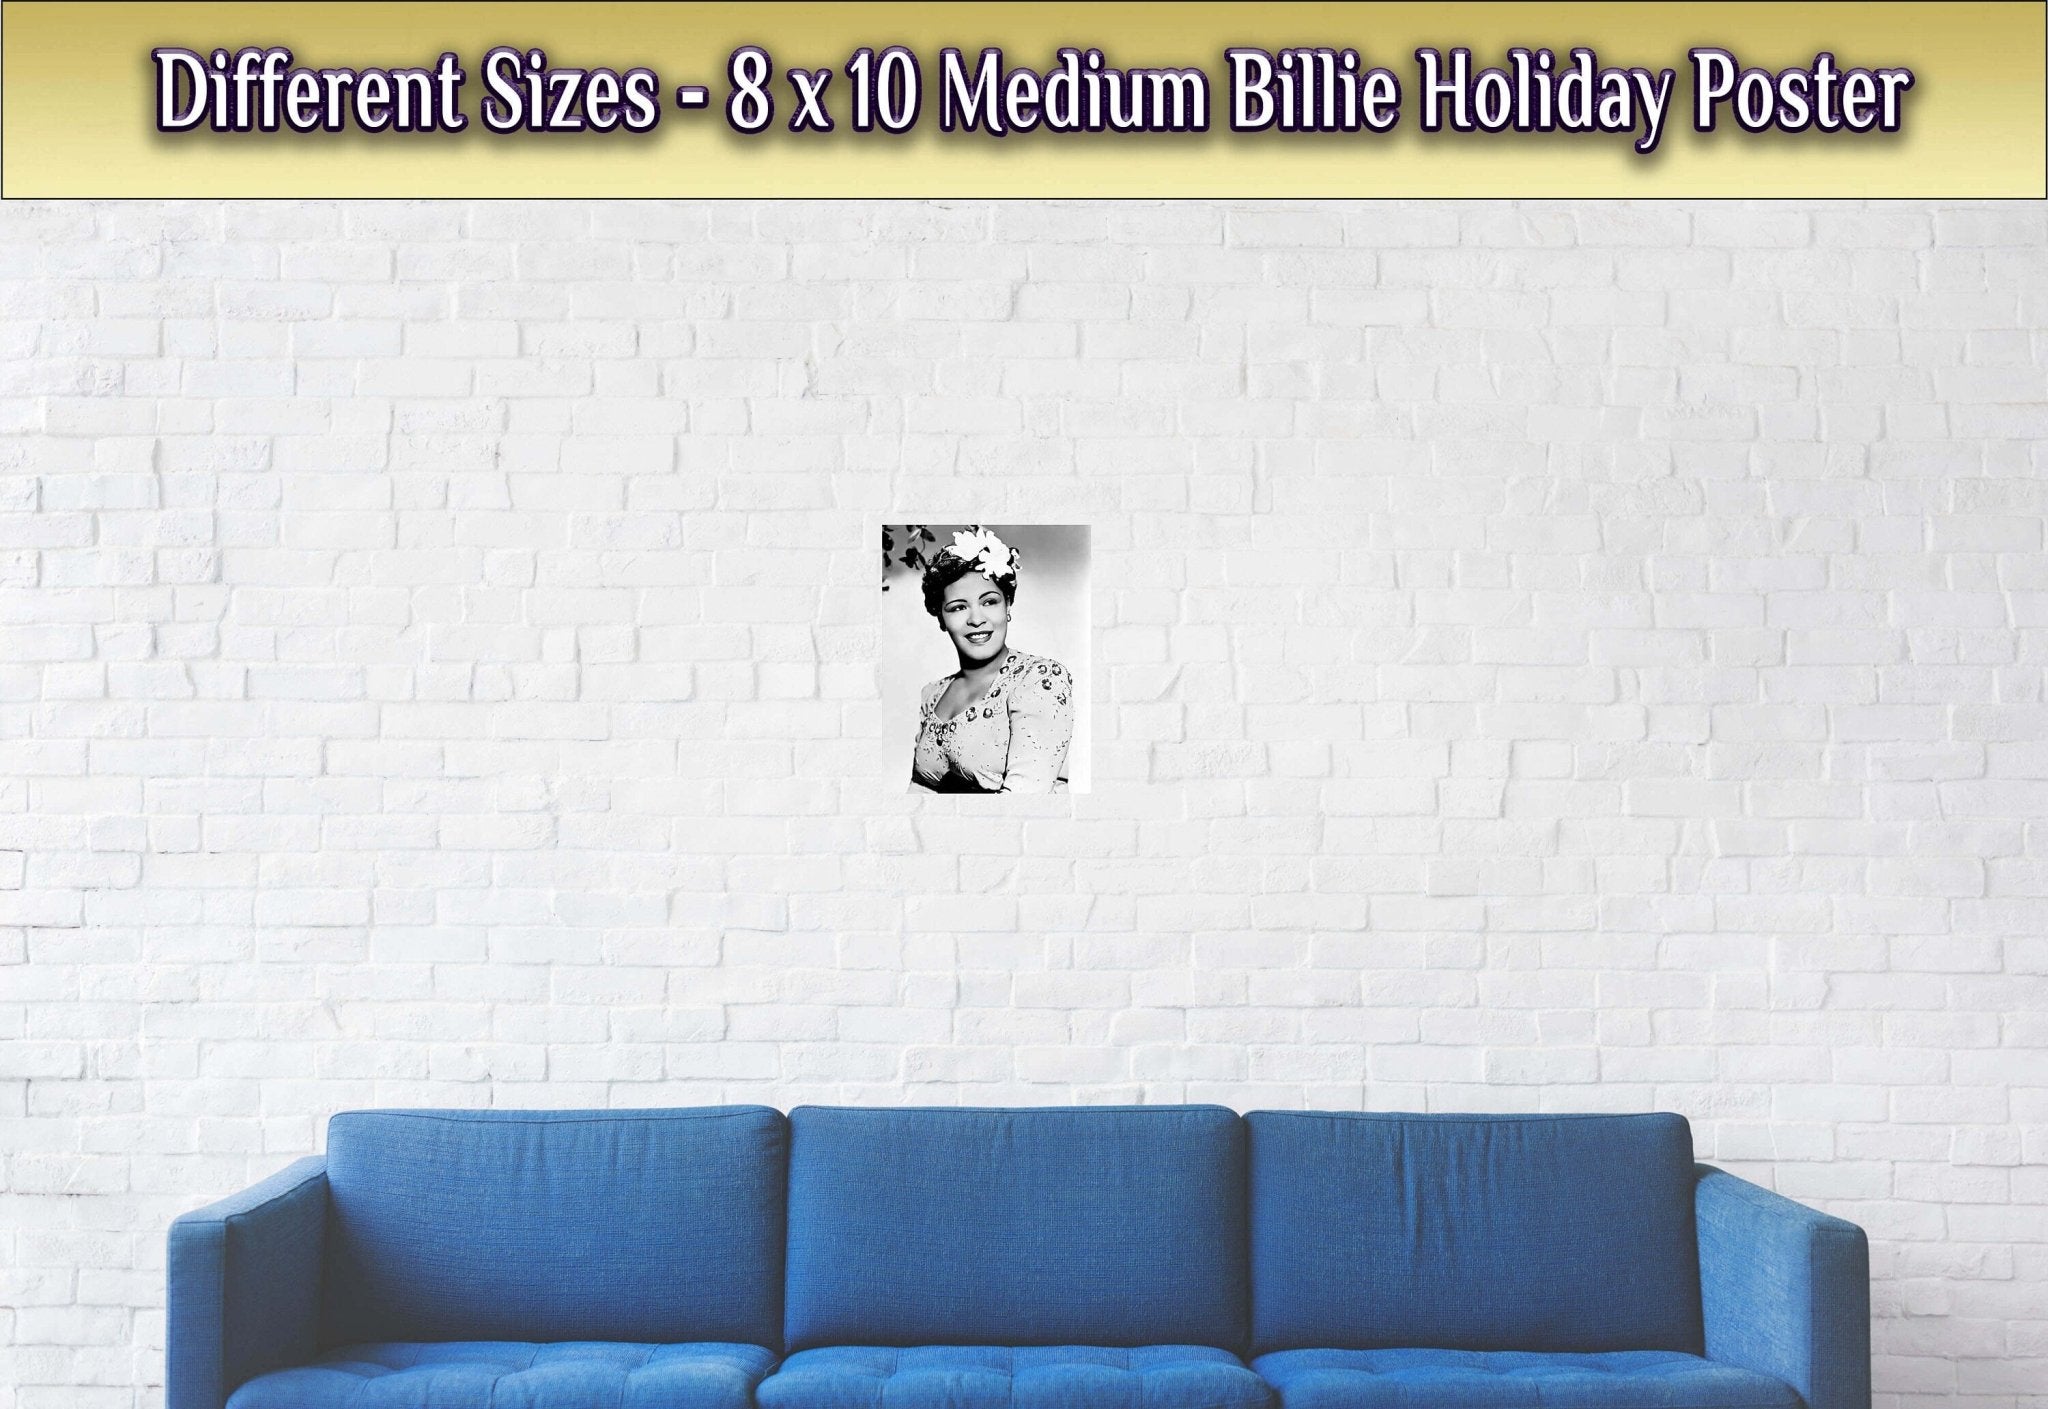 Billie Holiday Poster, Lady Day Soul Singer, Vintage Billie Holiday Print - Legend Of Soul Music - WallArtPrints4U